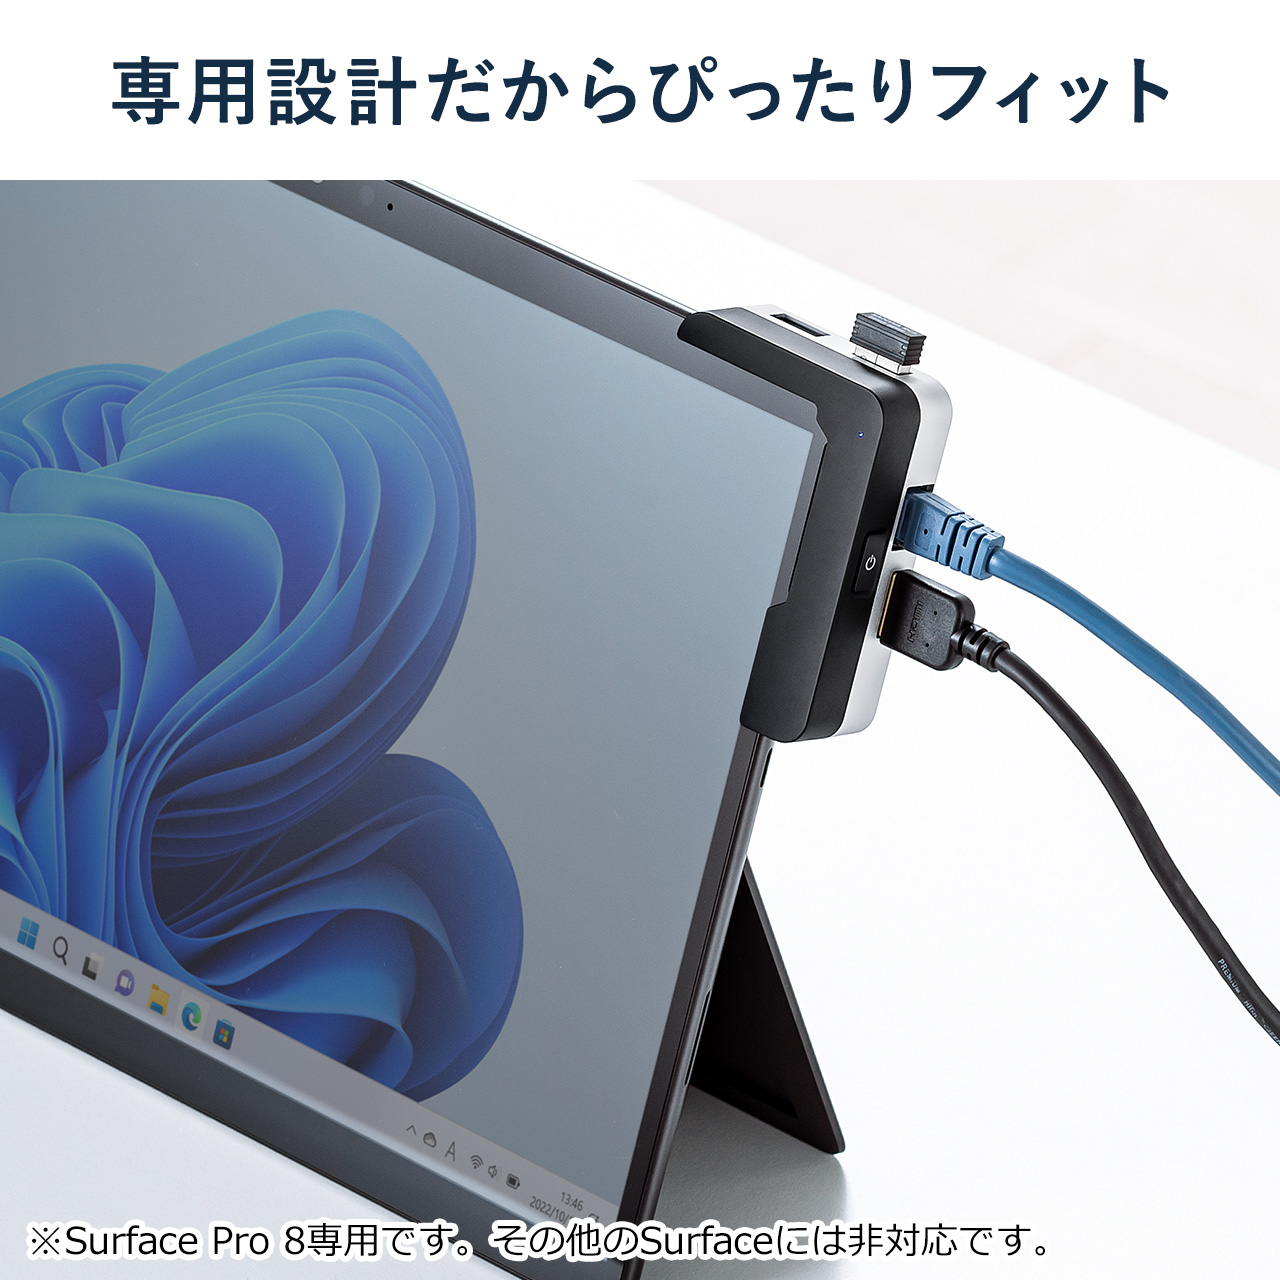 Surface Pro 8用ハブ ドッキングハブ USBハブ LAN搭載 HDMI出力 拡張対応 SD /microSD対応 専用設計  400-HUBC6Sの販売商品 通販ならサンワダイレクト